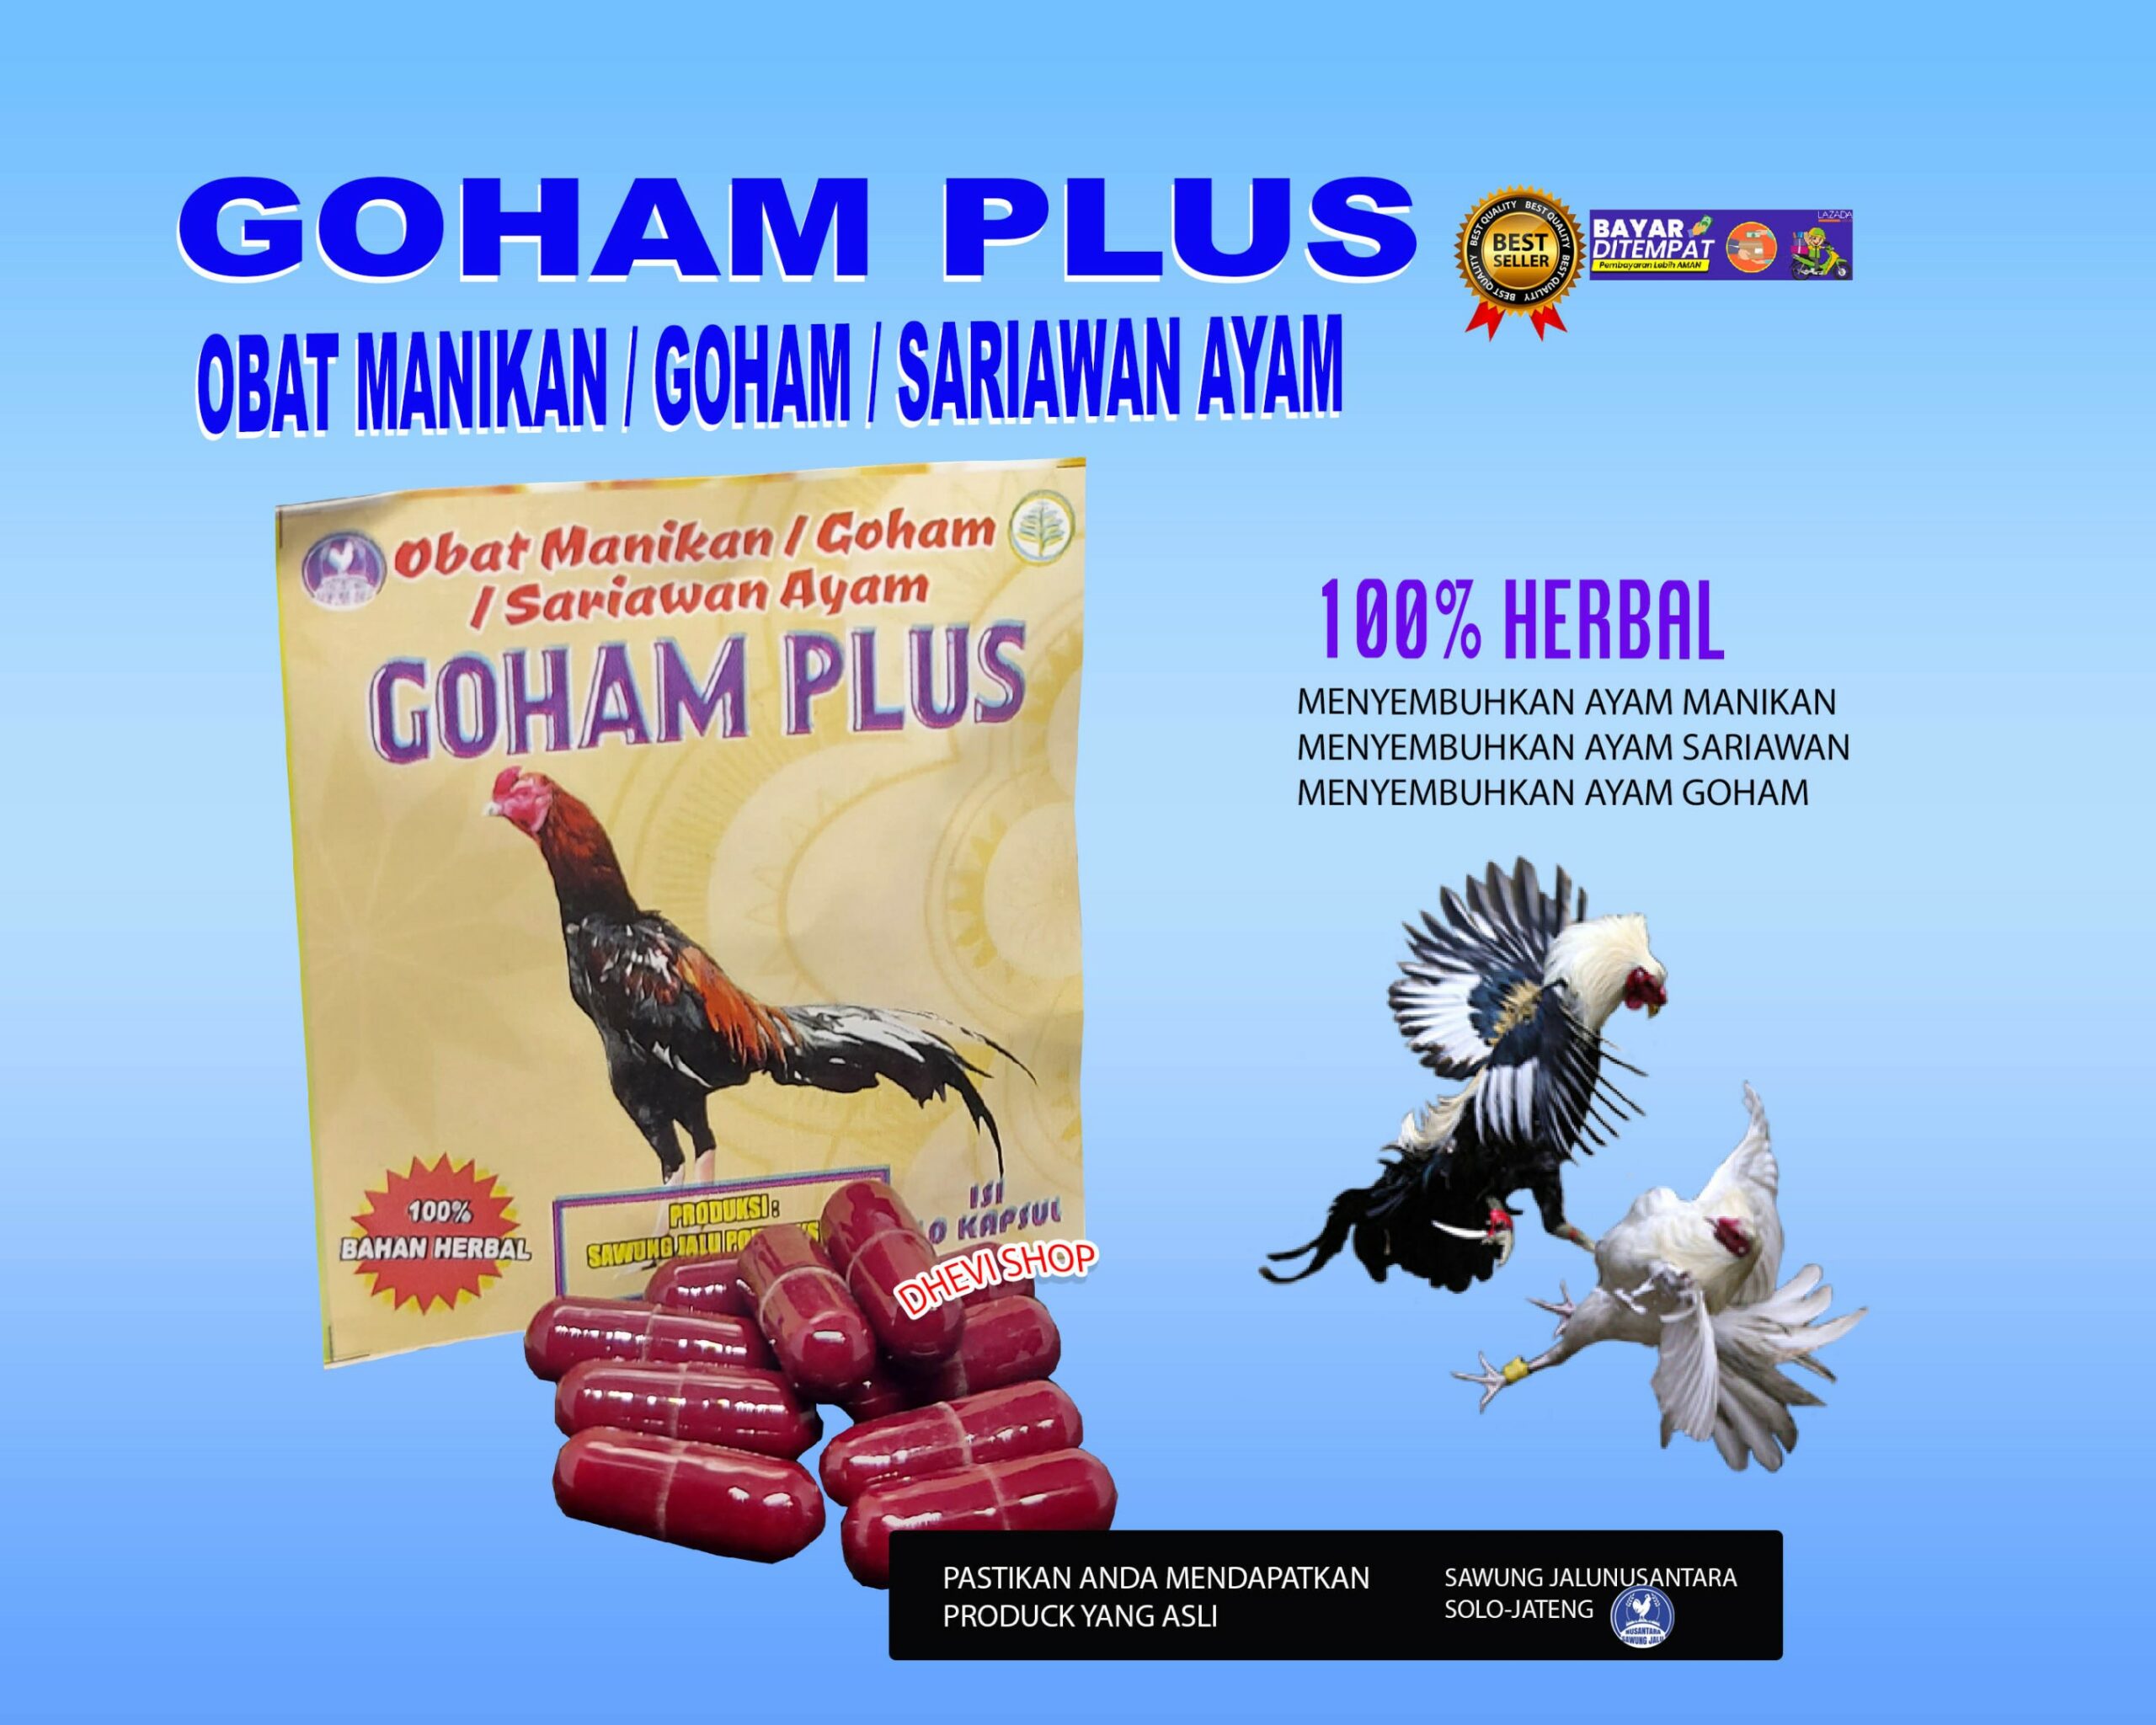 GOHAM PLUS-Obat Anti Goham Dan Sariawan Infeksi Saluran Nafas Ayam